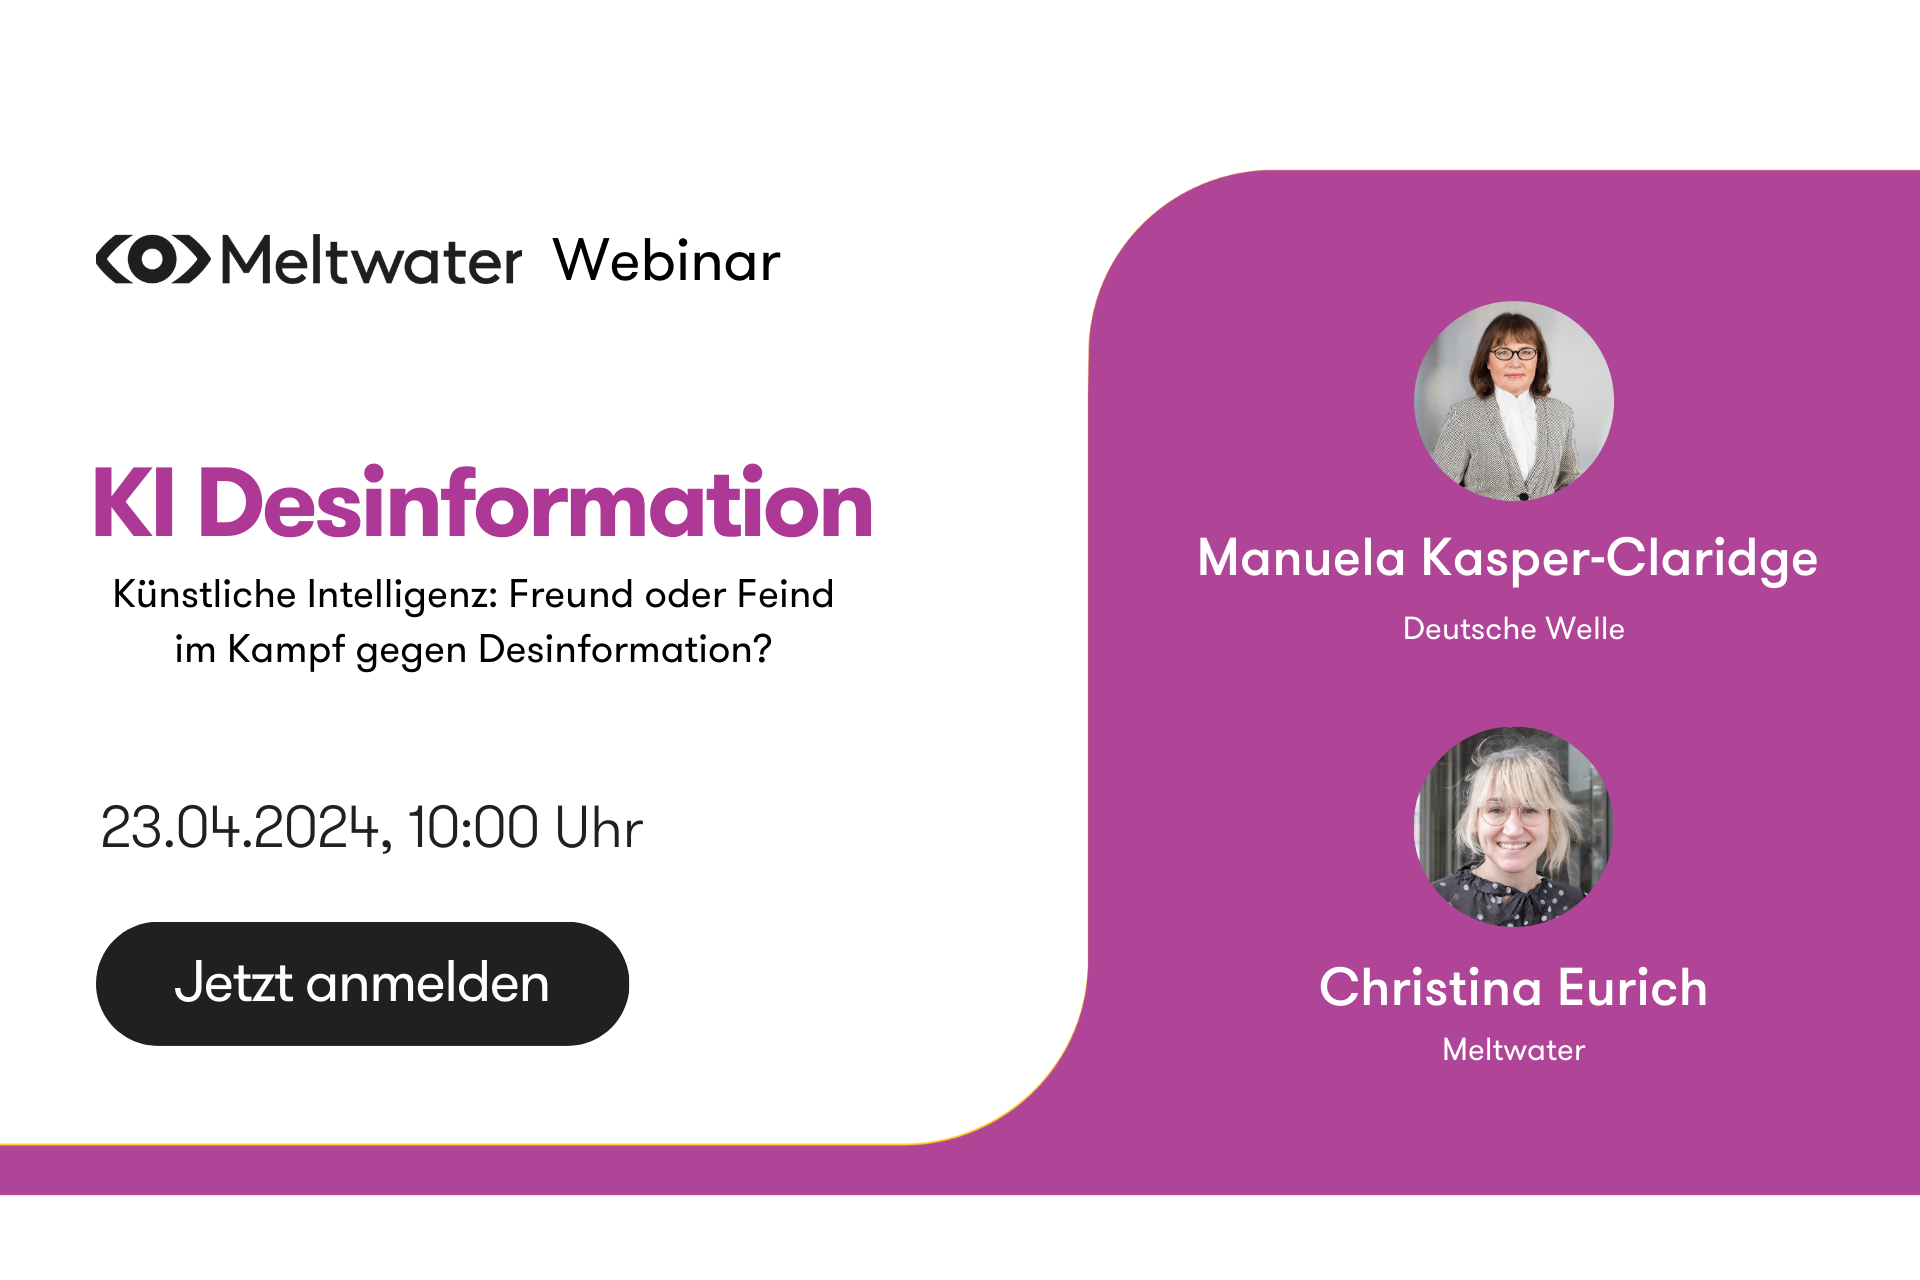 Auf dem Bild sieht man die Webinar SprecherInnen Manuela Kasper-Claridge von der Deutschen Welle und Christina Eurich von Meltwater.